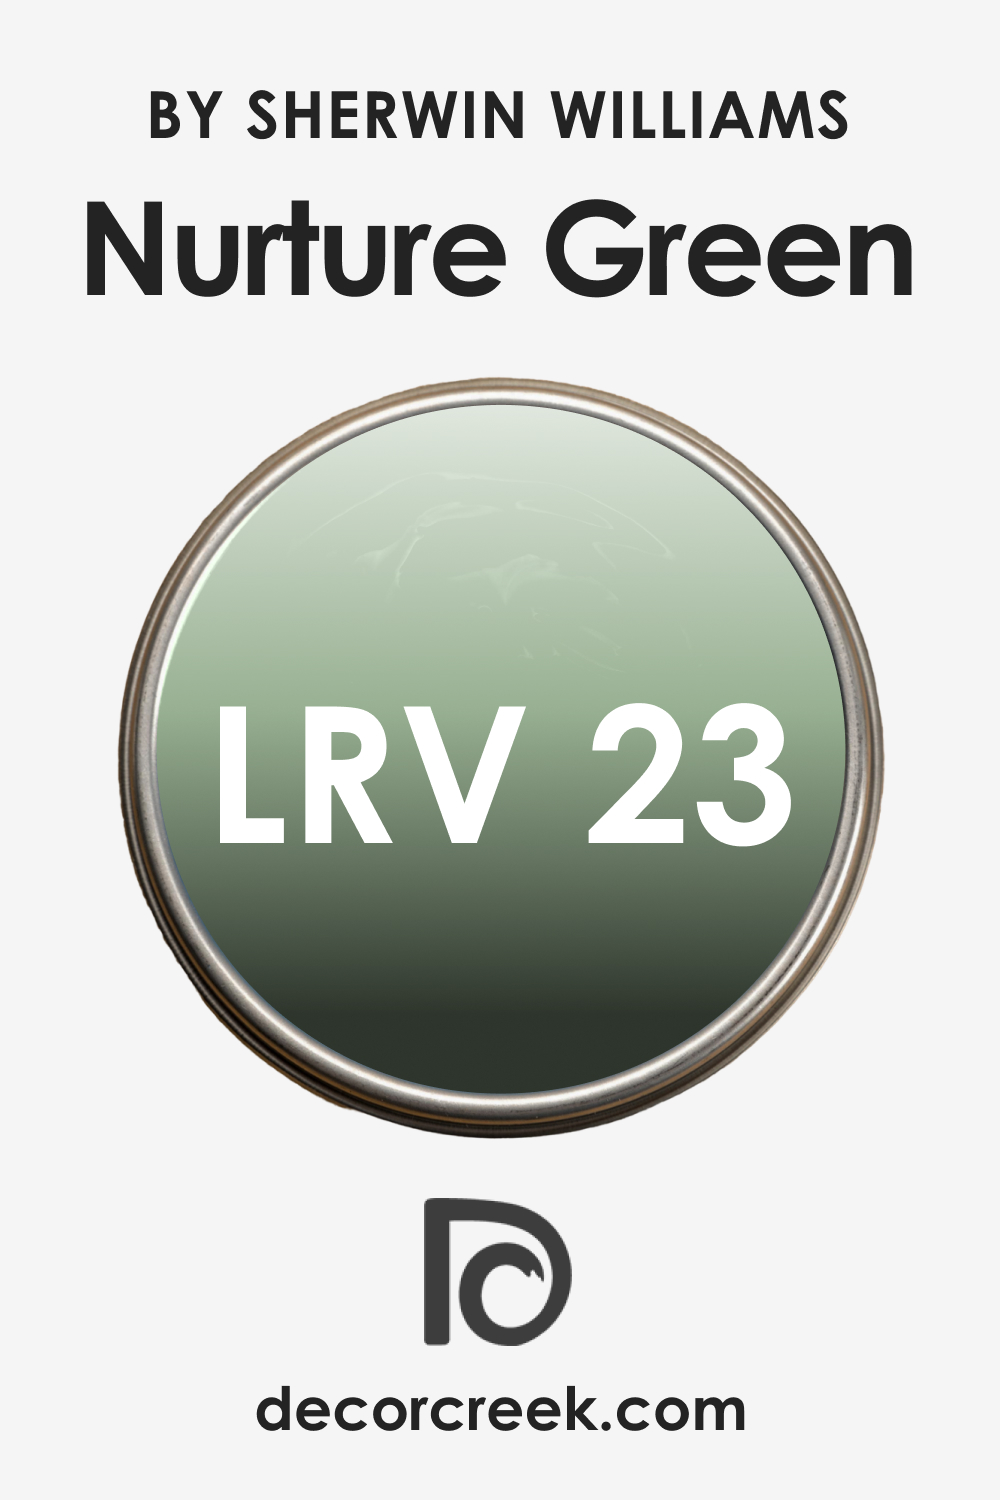 LRV of SW Nurture Green